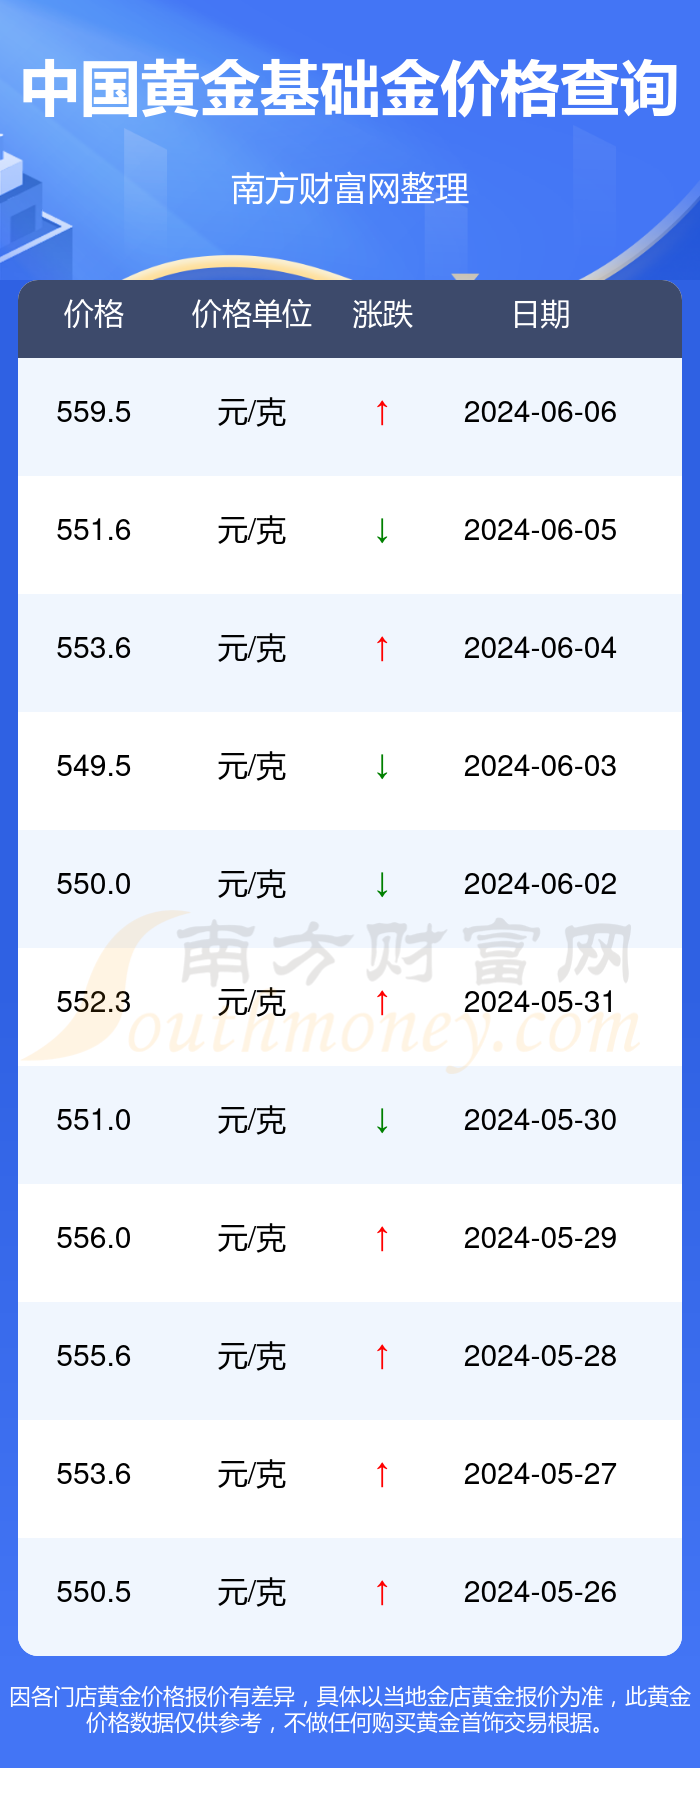 2024年6月6日中国黄金基础金价格:5595元/克